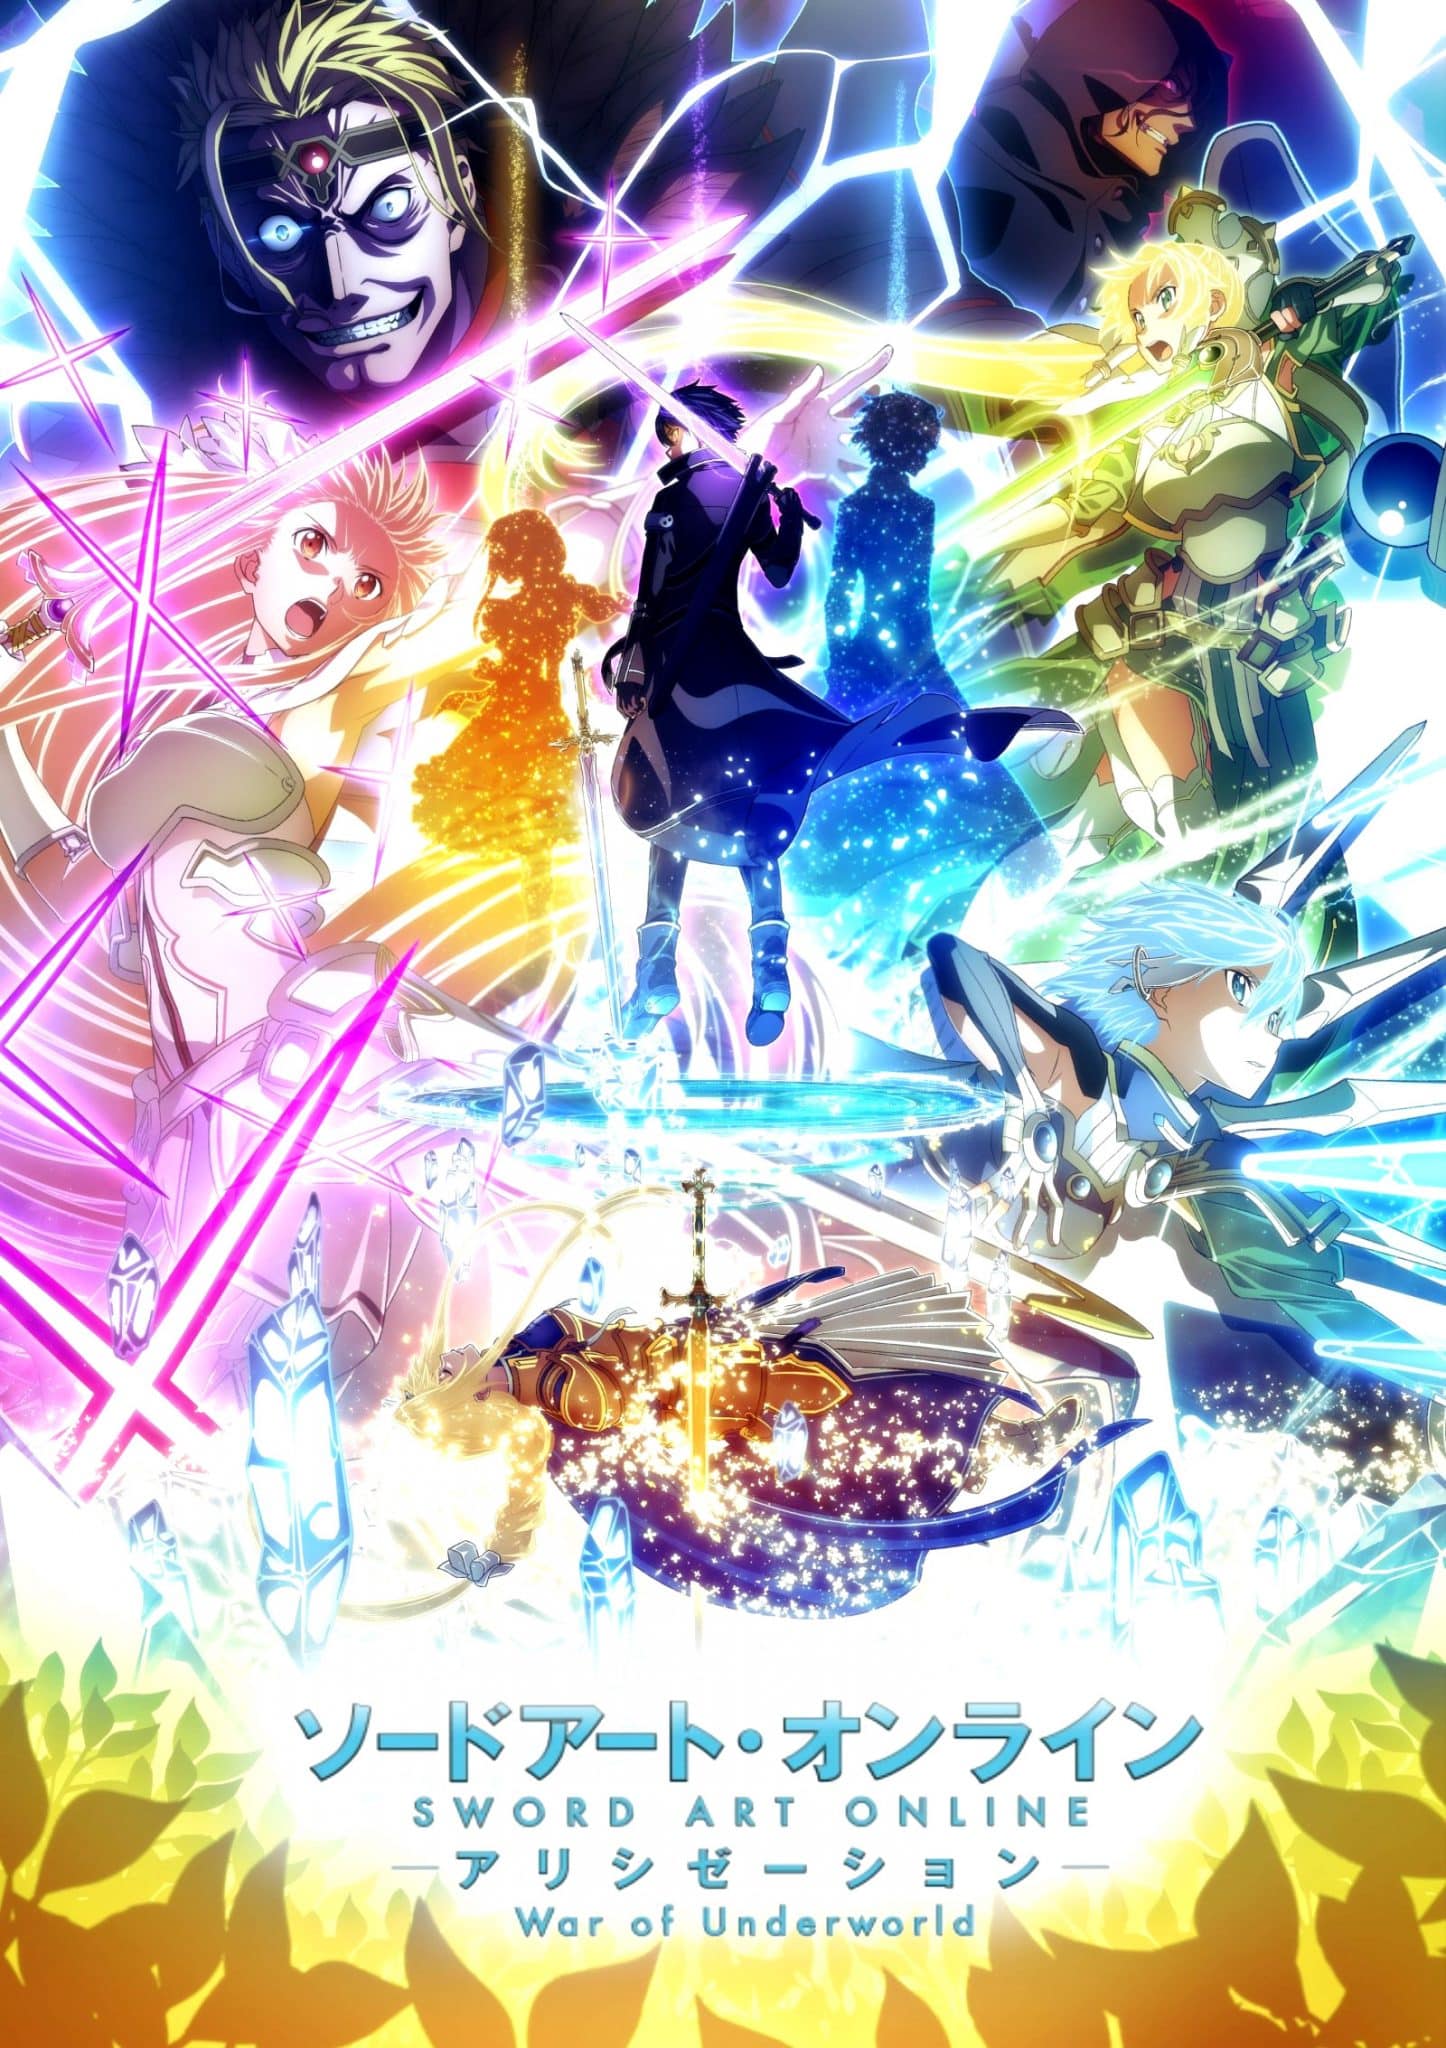 Visuel clé pour la sortie de la partie 2 de l'anime Sword Art Online Alicization War of Underworld